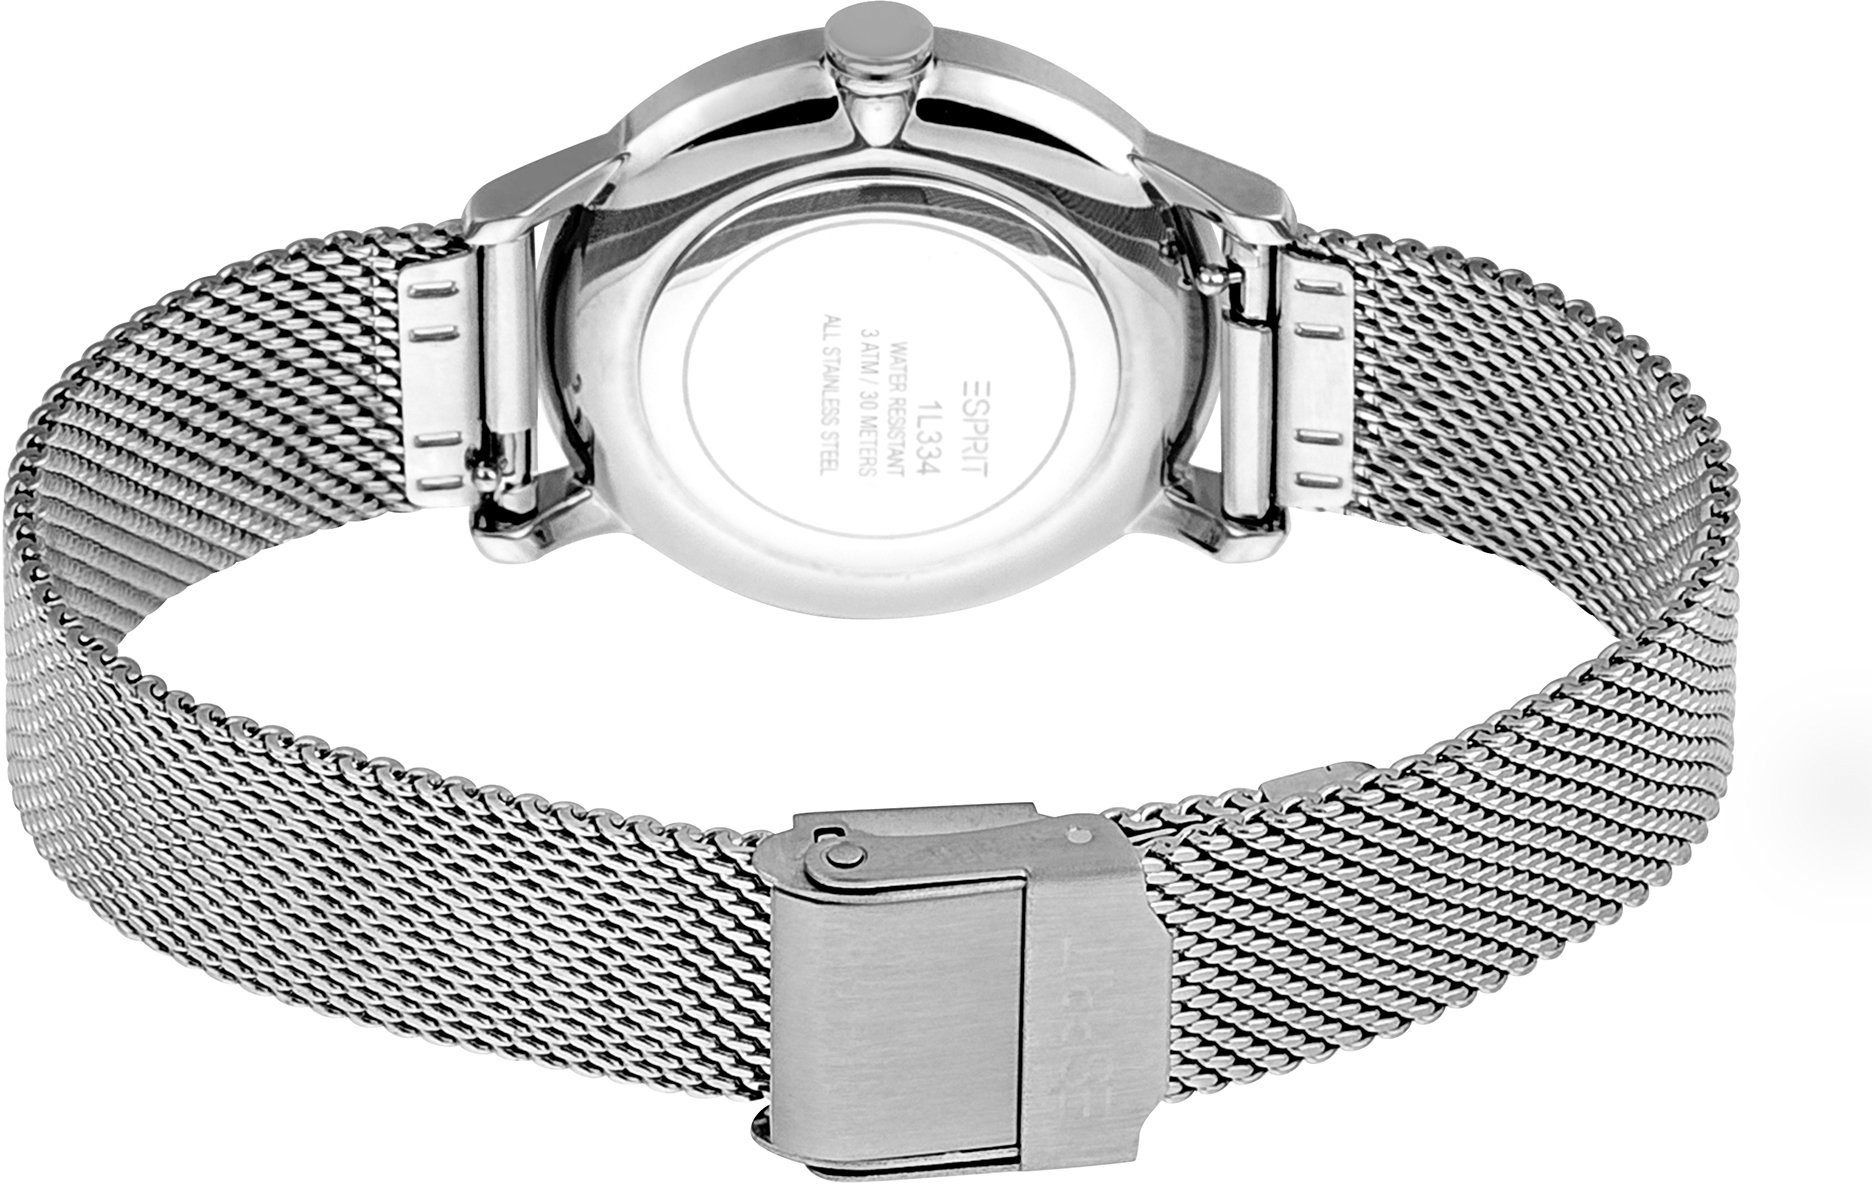 Damen Uhren Esprit Quarzuhr Julia, ES1L334M0015, (Set, 2-tlg., mit Wechselband)